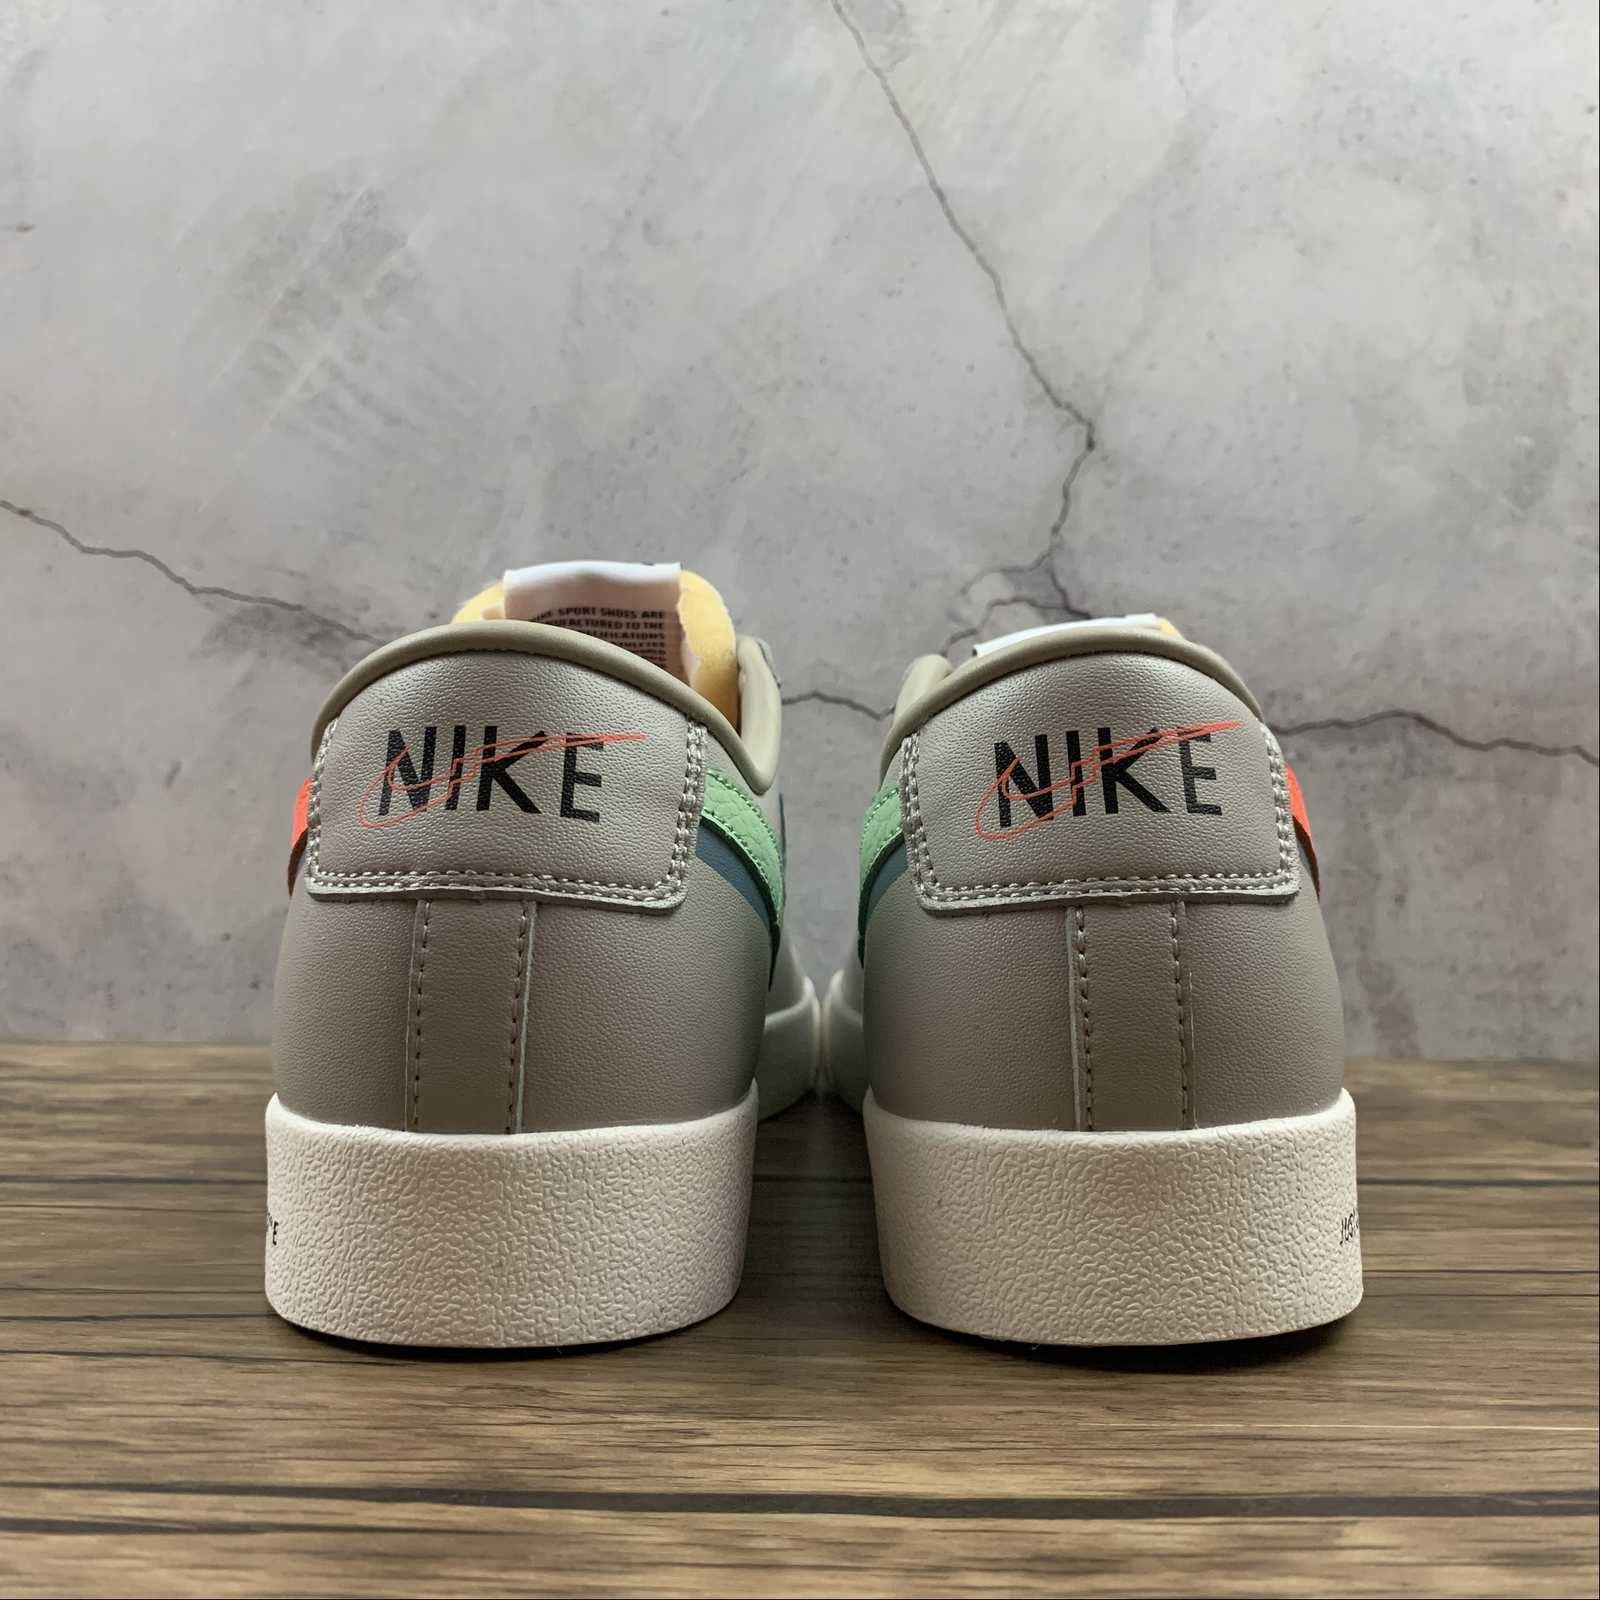 Nike blazer low grey/orange